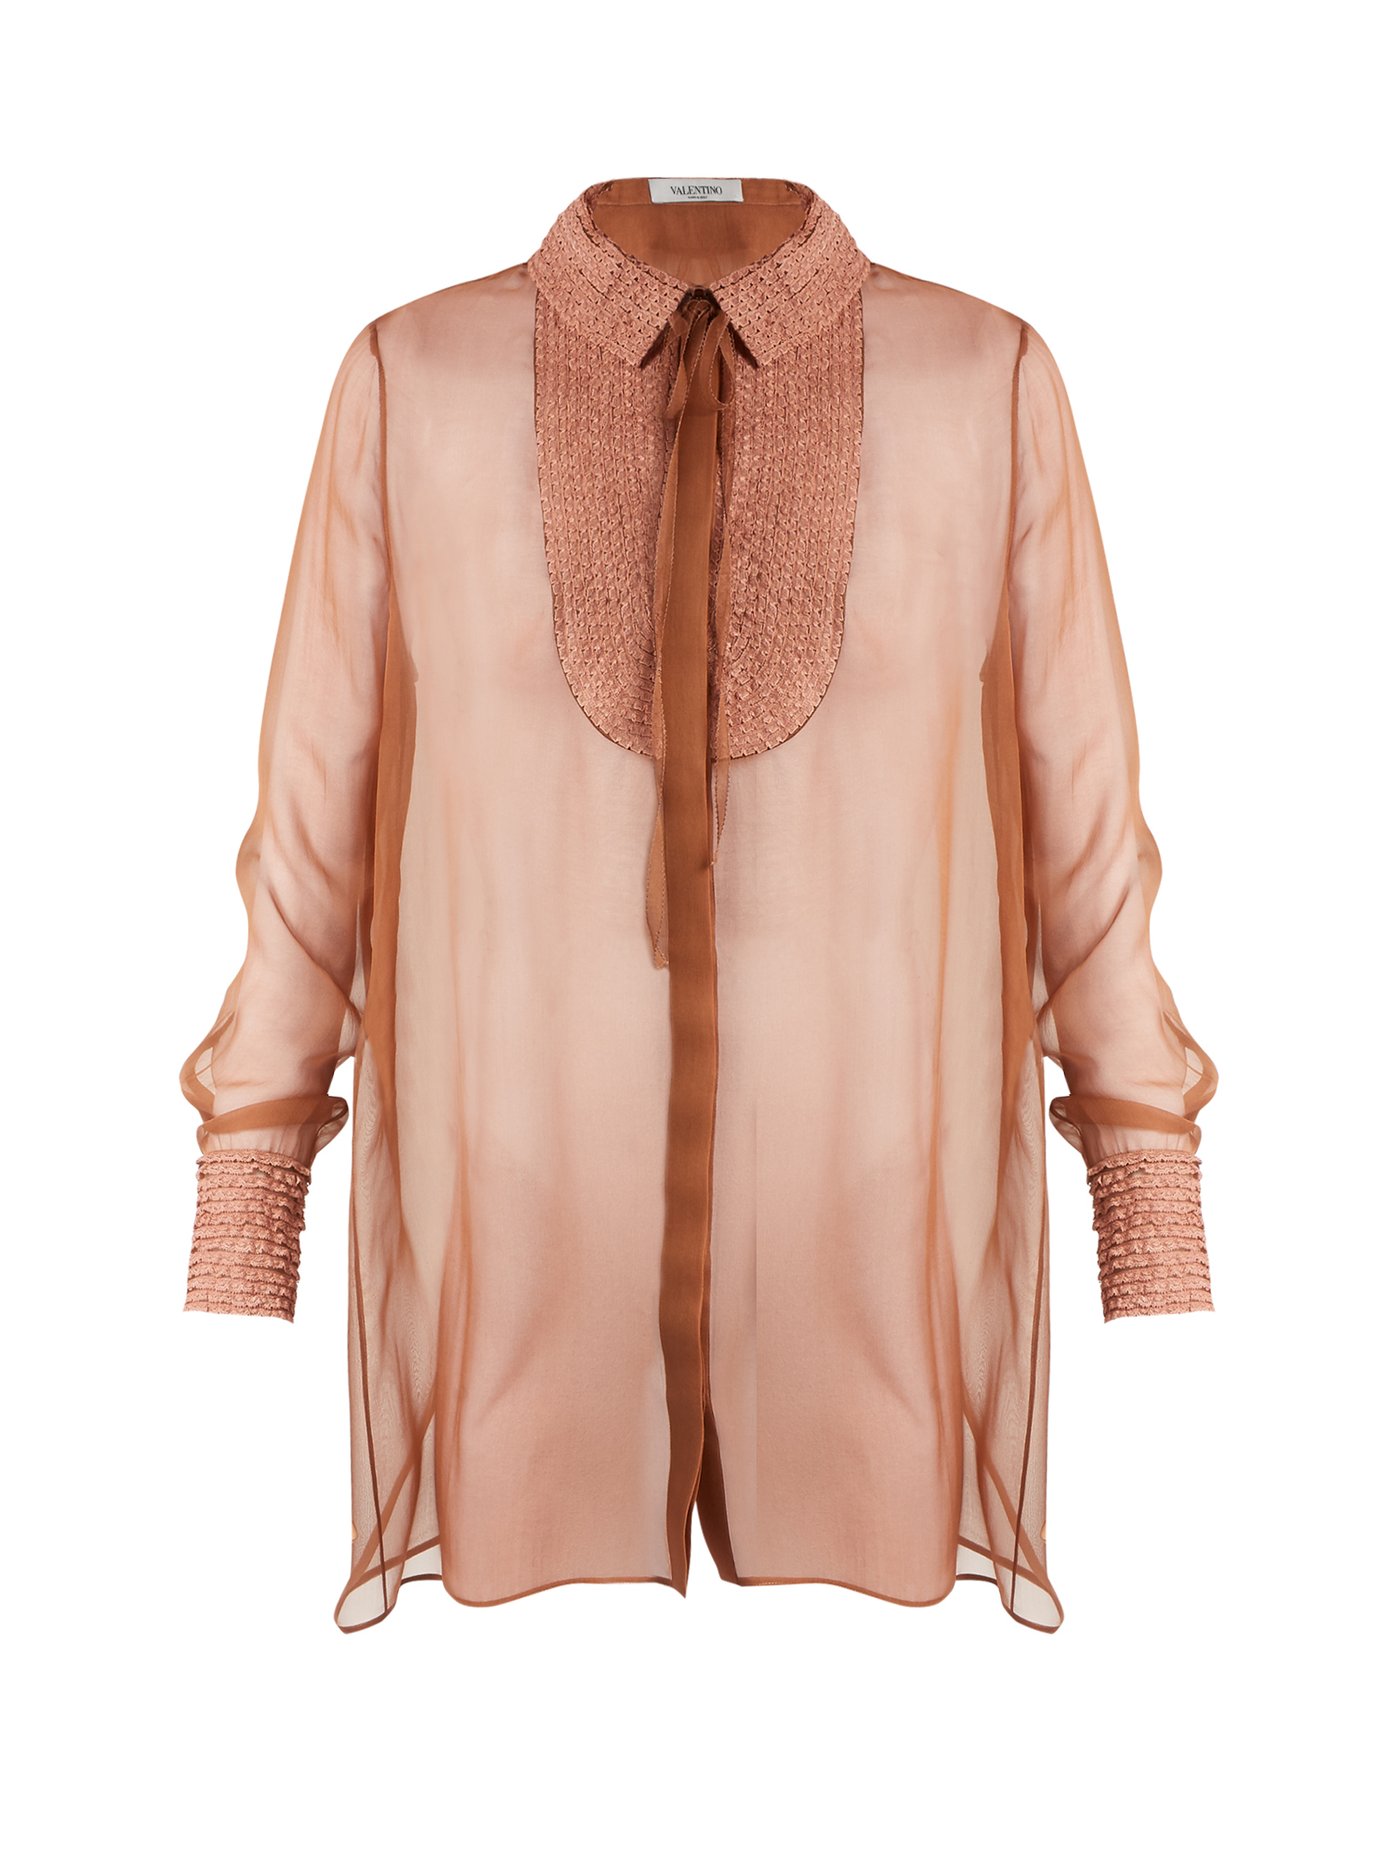 silk chiffon blouses